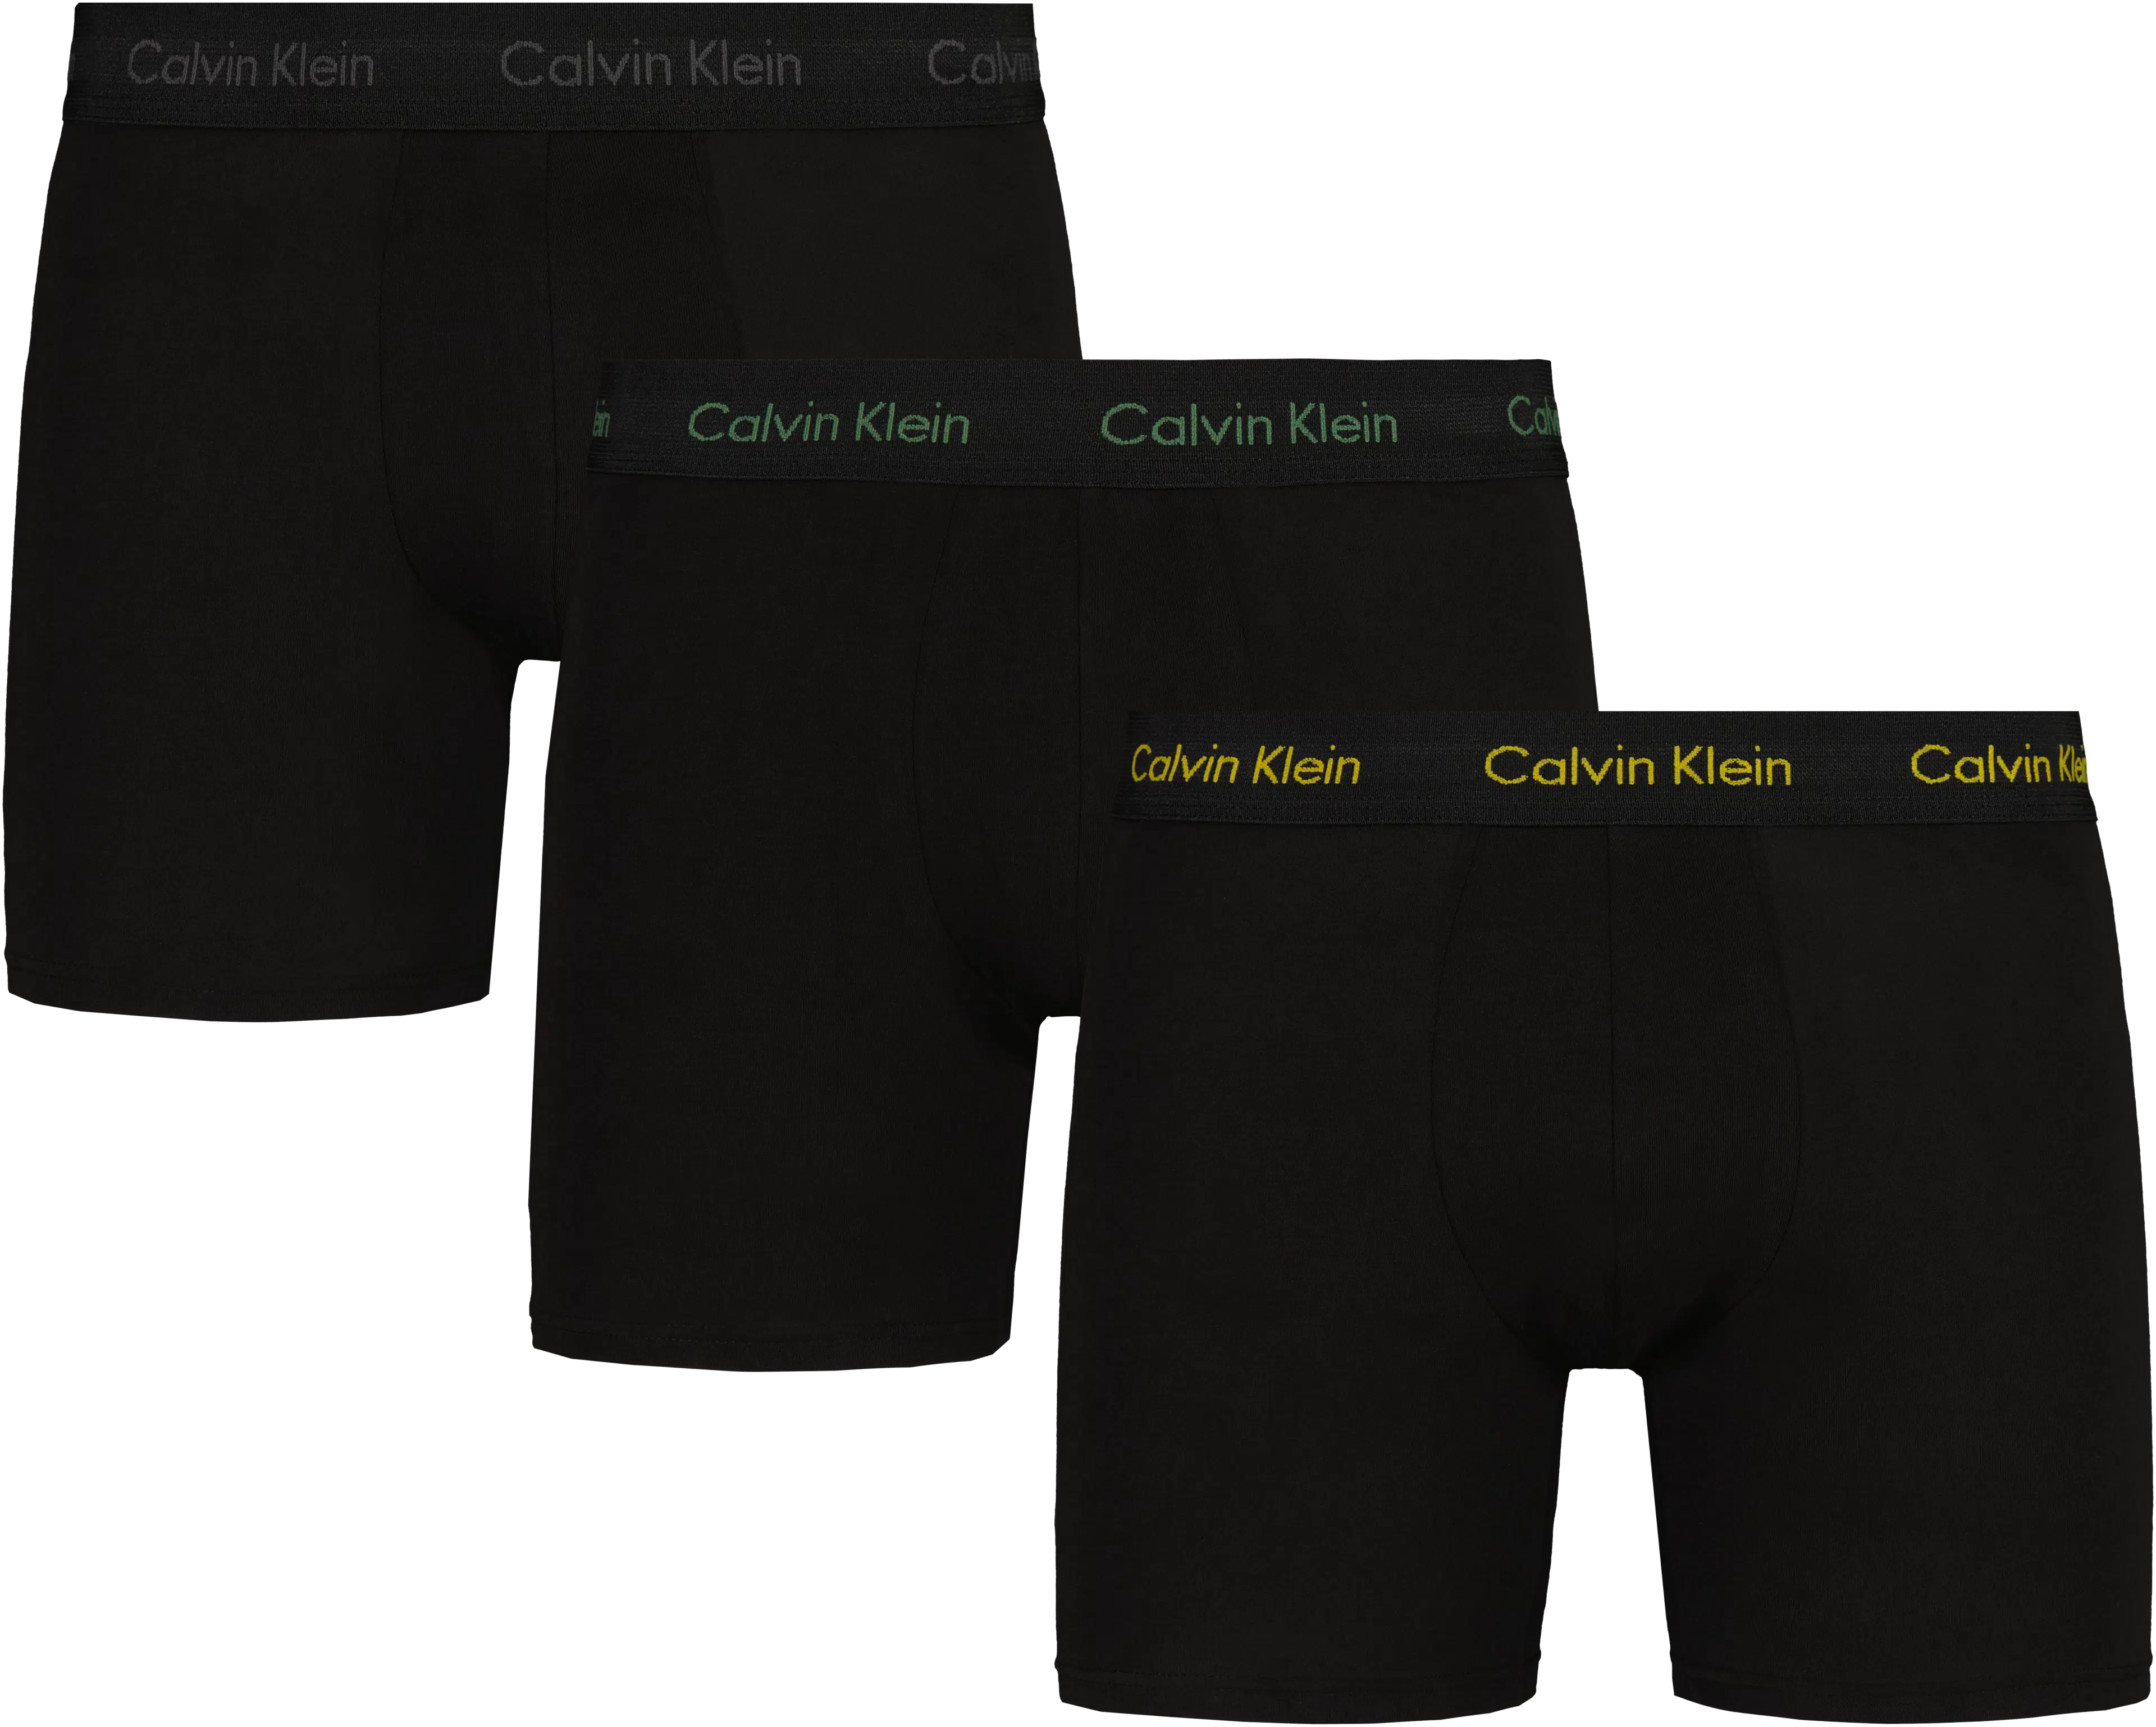 Calvin Klein Cotton Stretch bokserit 3 kpl/pkt